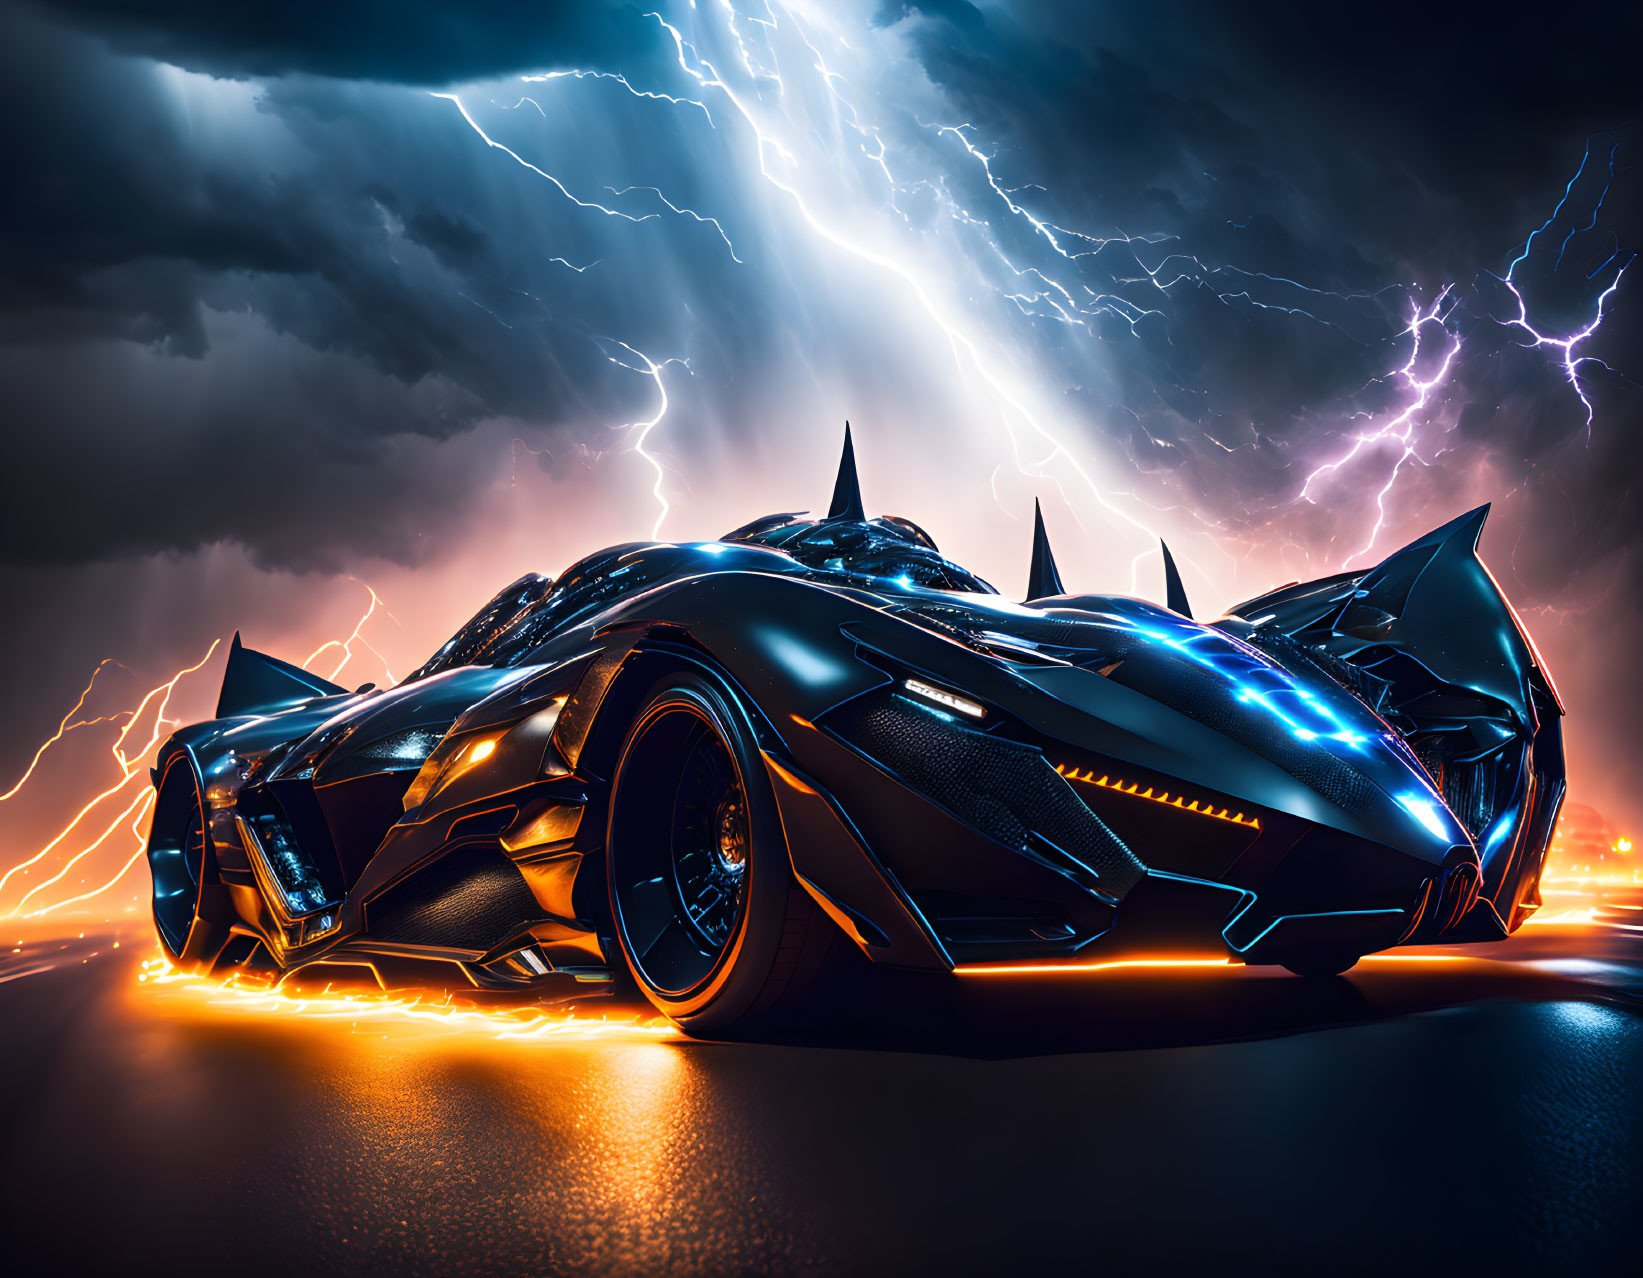 Batmobile: Fury Road